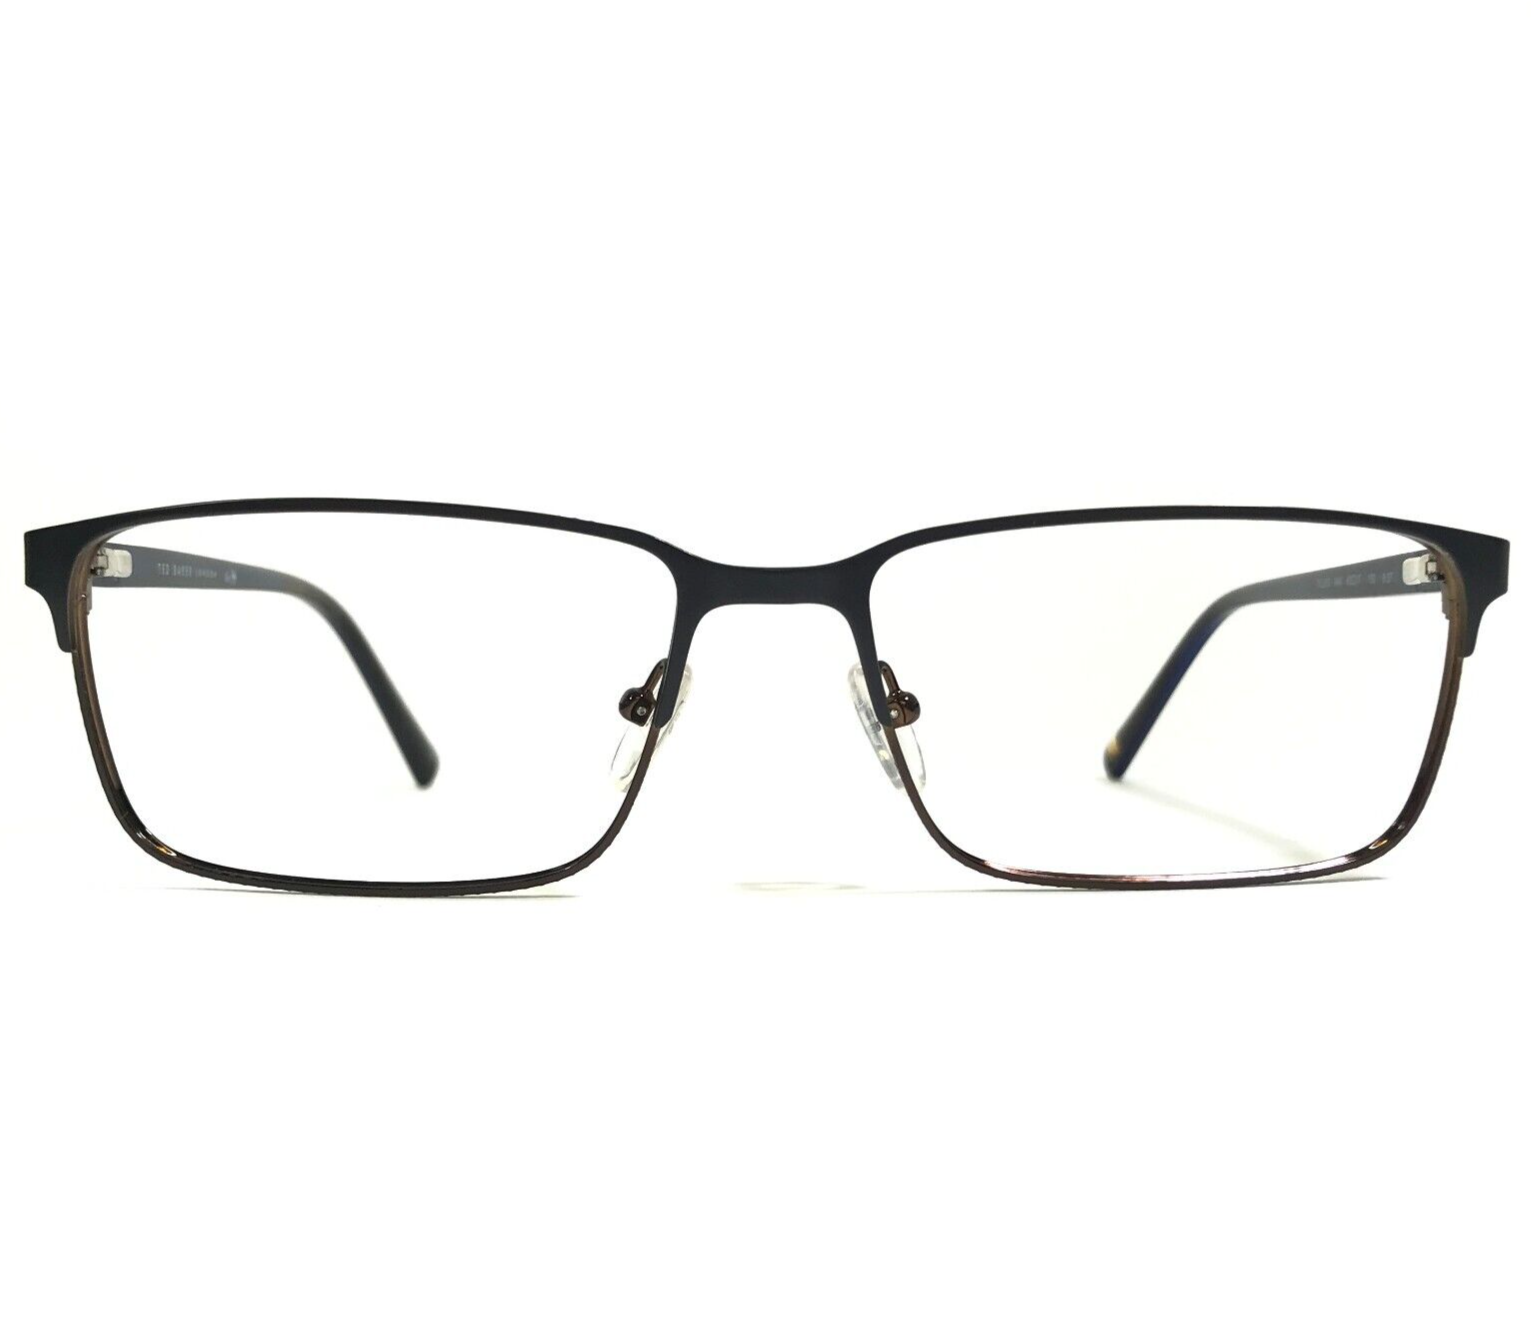 Primary image for Ted Baker Eyeglasses Frames TXL503 NAV Brown Navy Blue Thin Rim Large 60-17-150